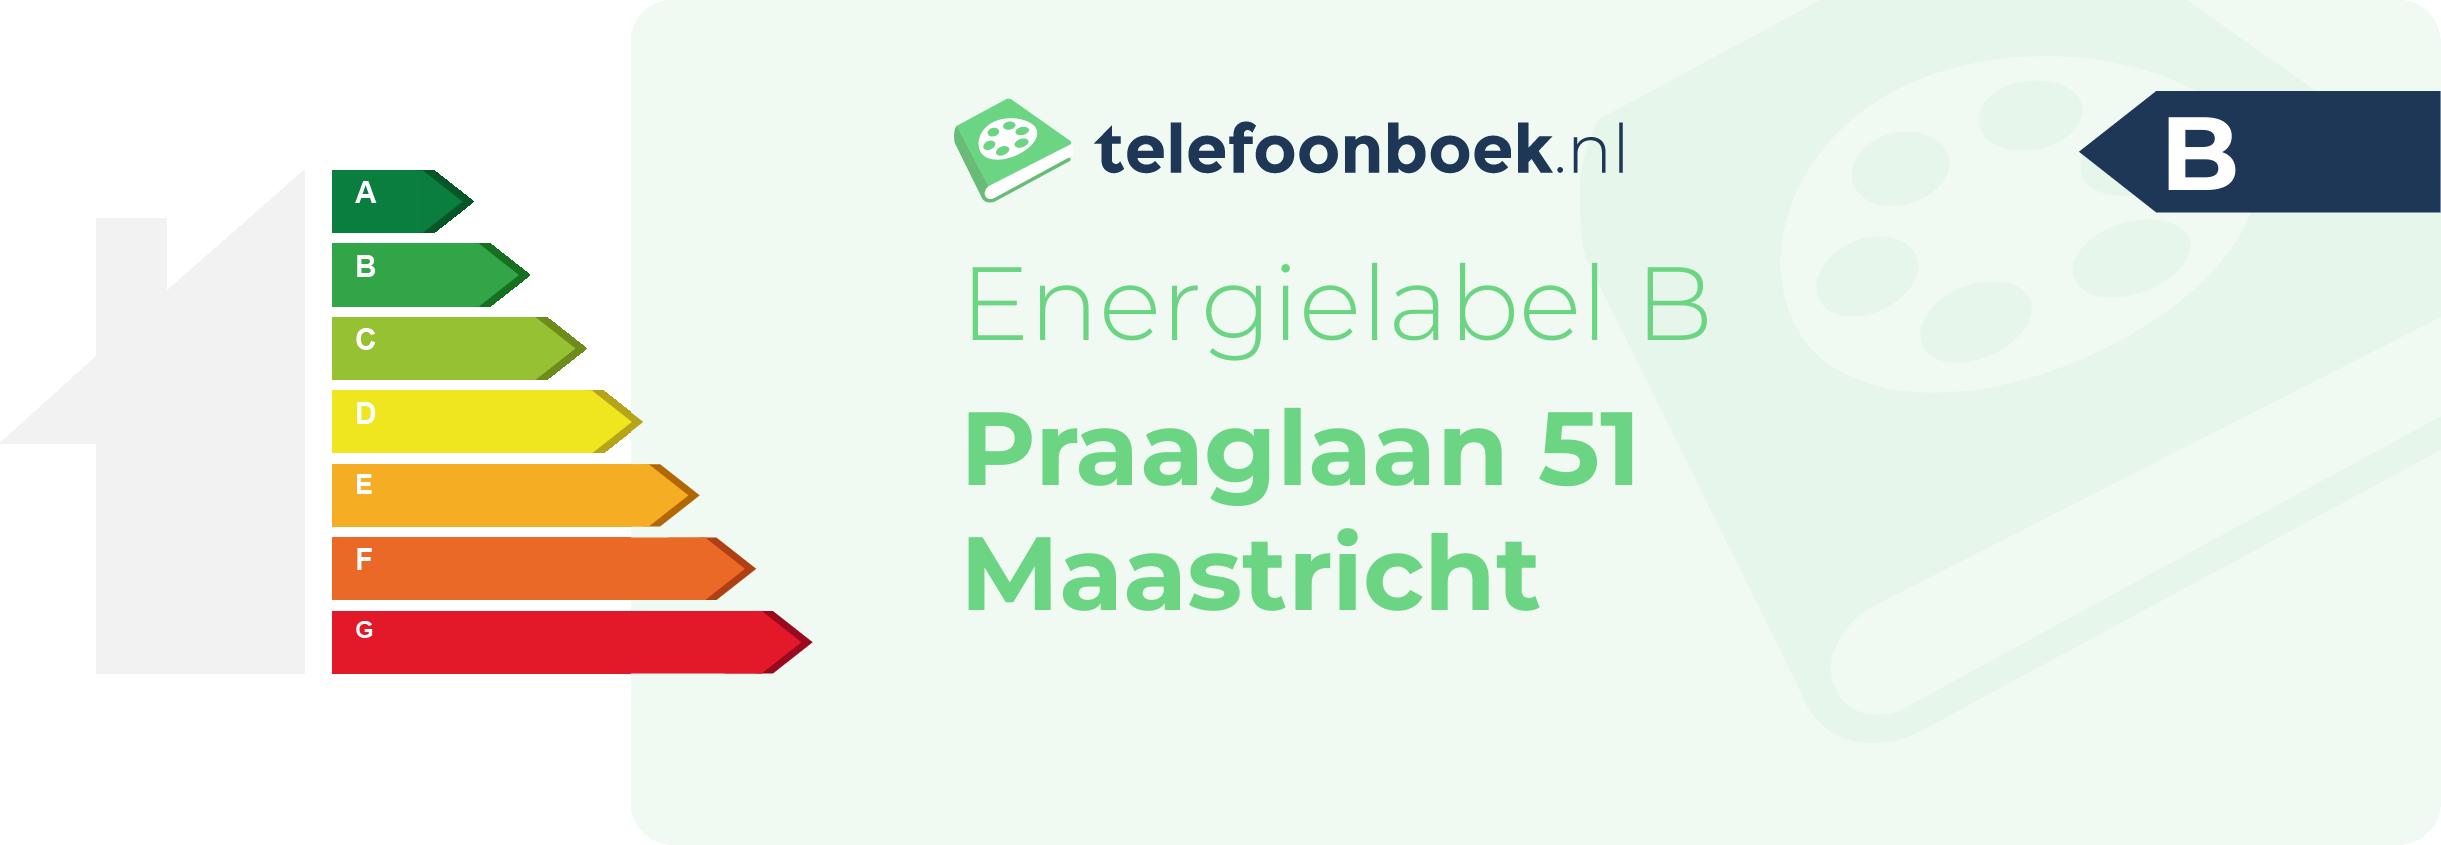 Energielabel Praaglaan 51 Maastricht